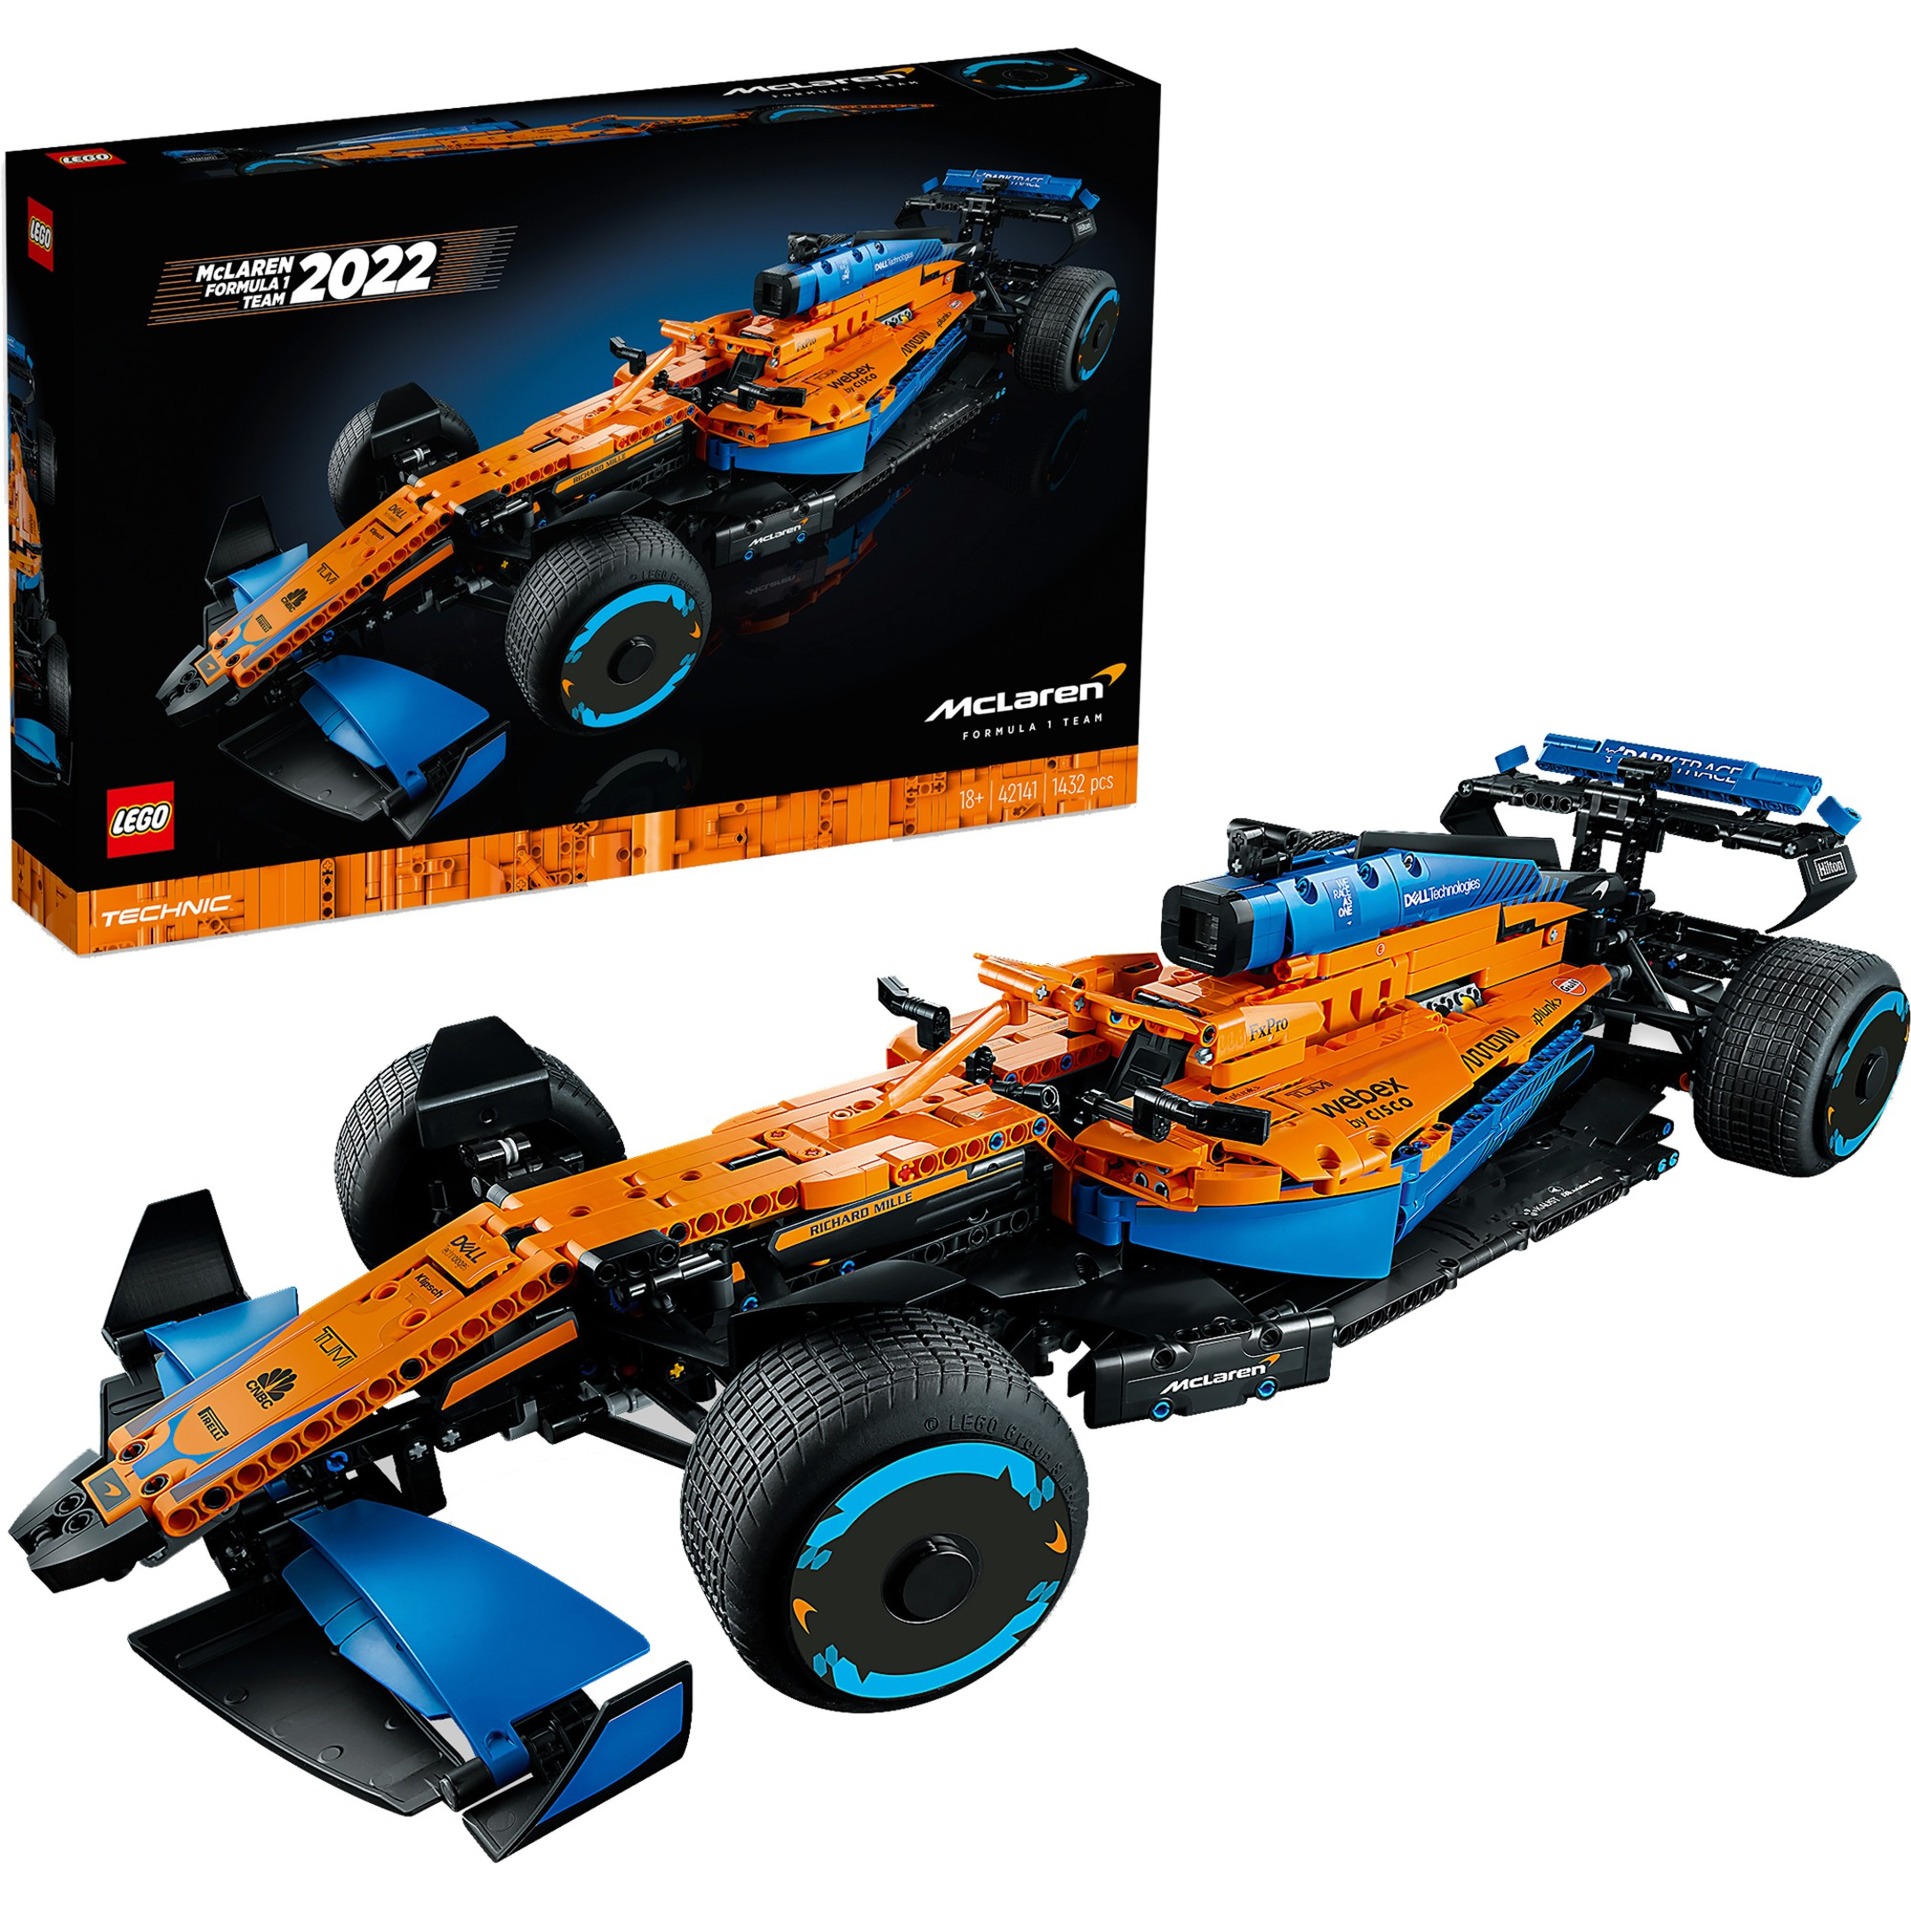 Image of Alternate - 42141 LEGO Technic McLaren Formel 1 Rennwagen, Konstruktionsspielzeug online einkaufen bei Alternate